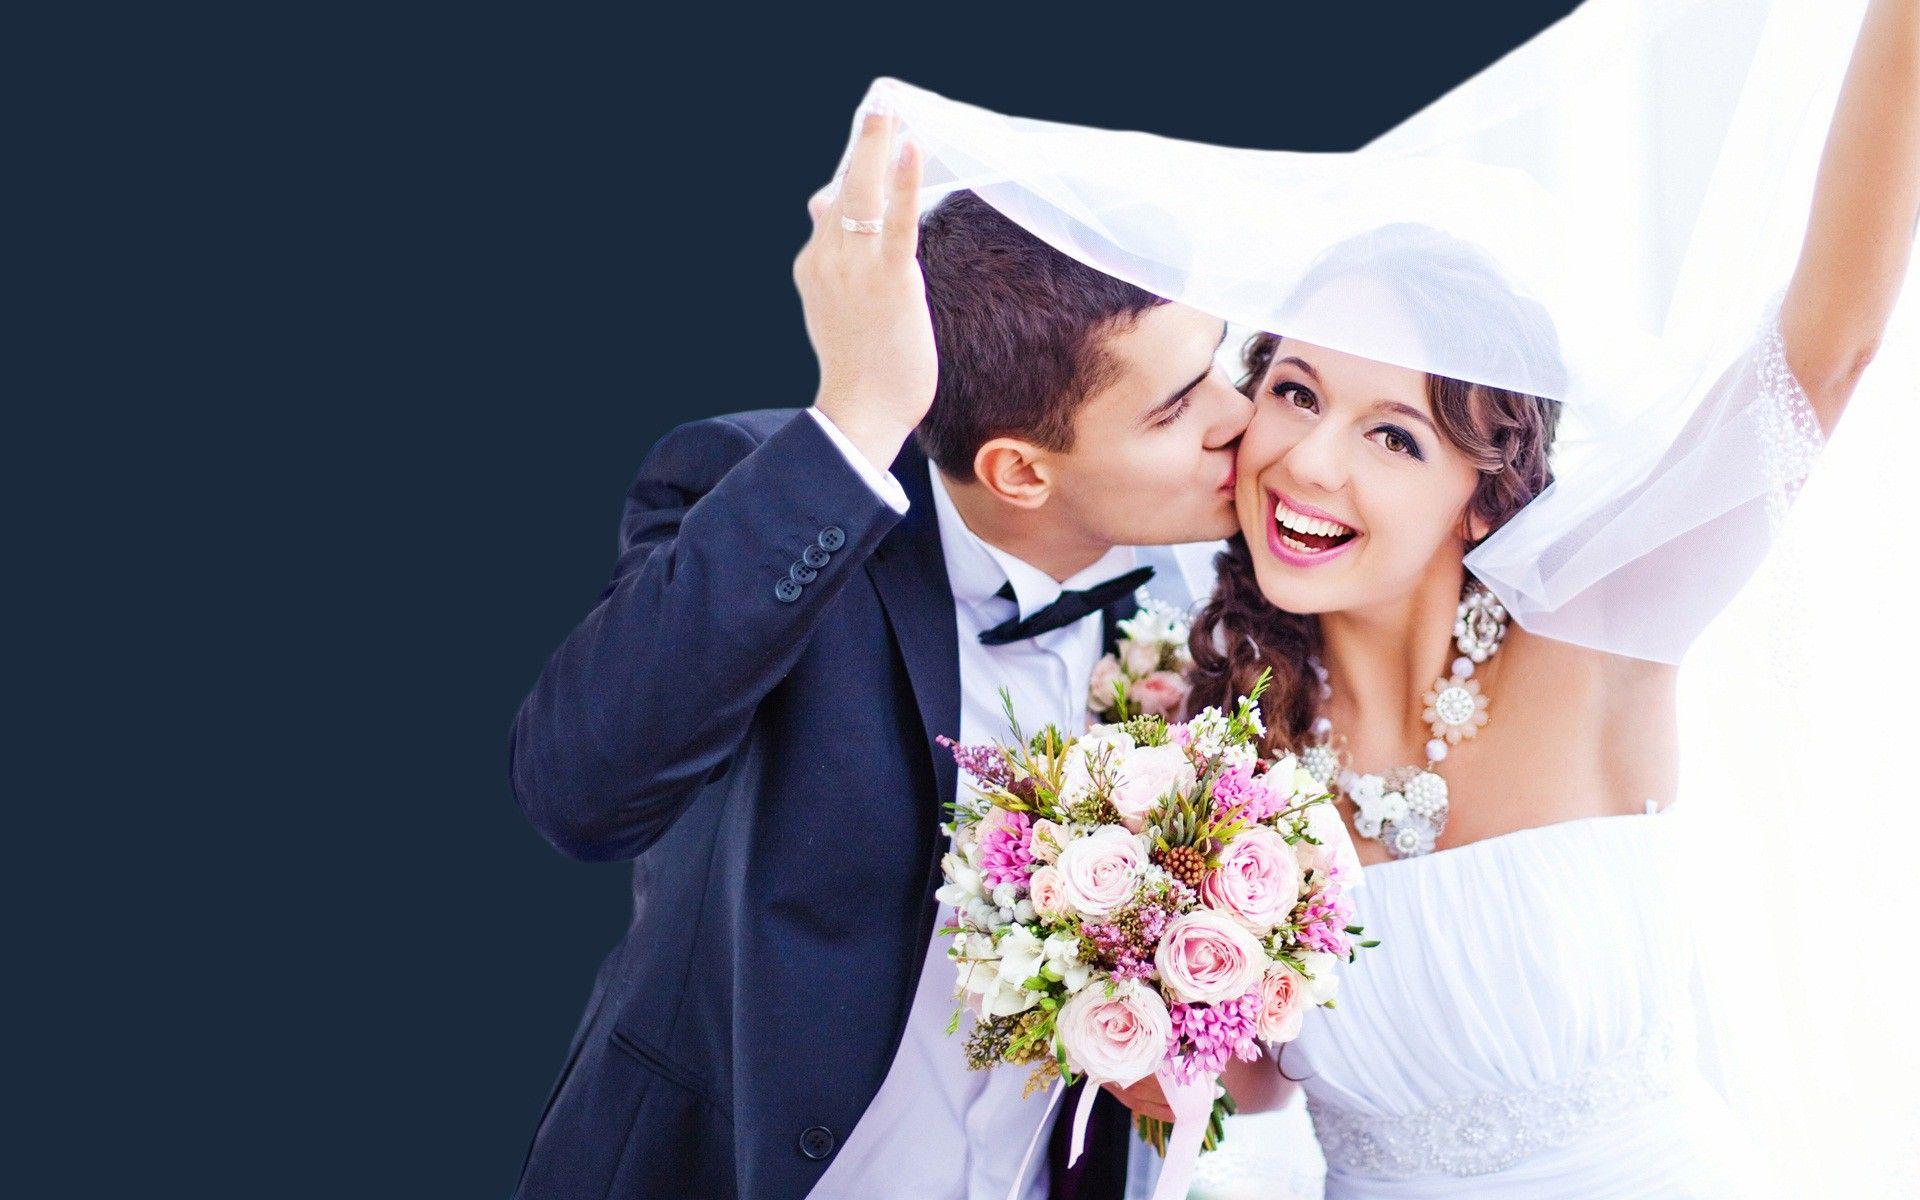 История Знакомства Жениха И Невесты В Интернете